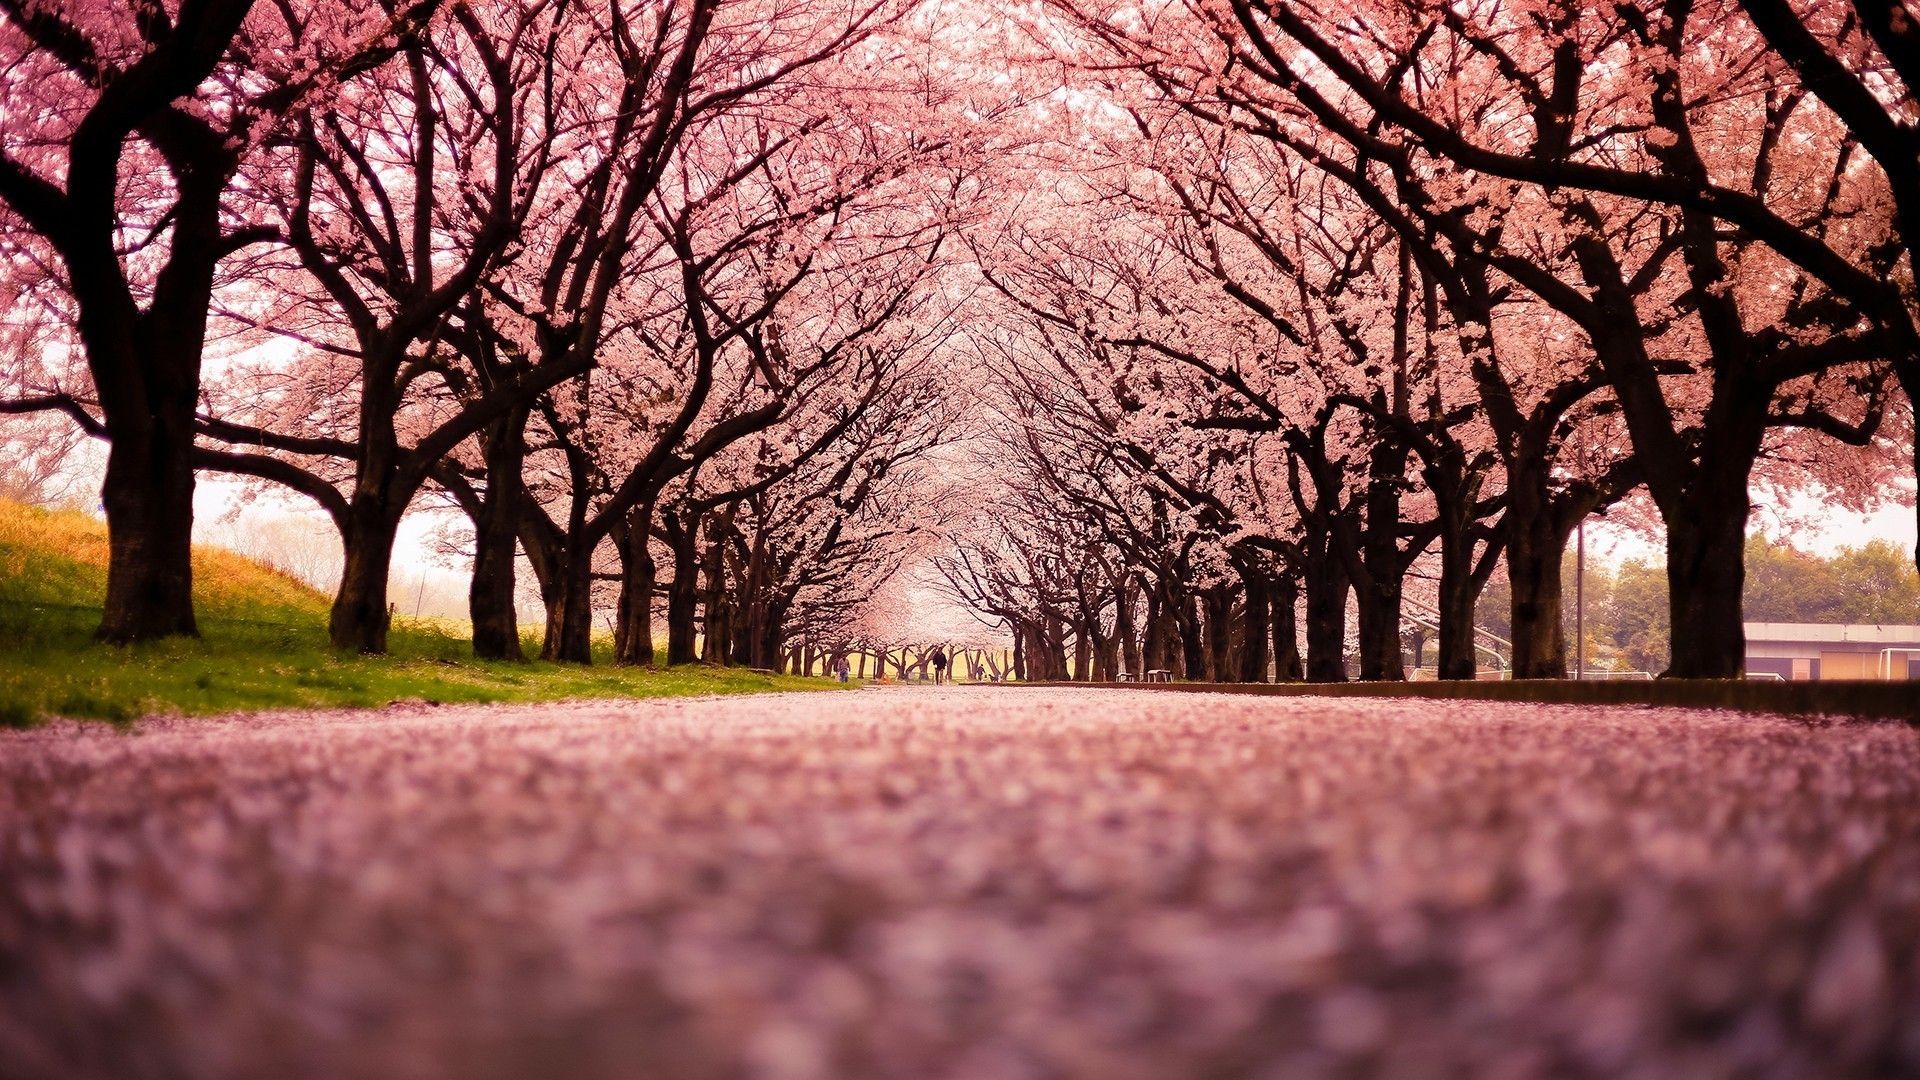 Japanese Cherry Blossom Wallpaper 1920×1080